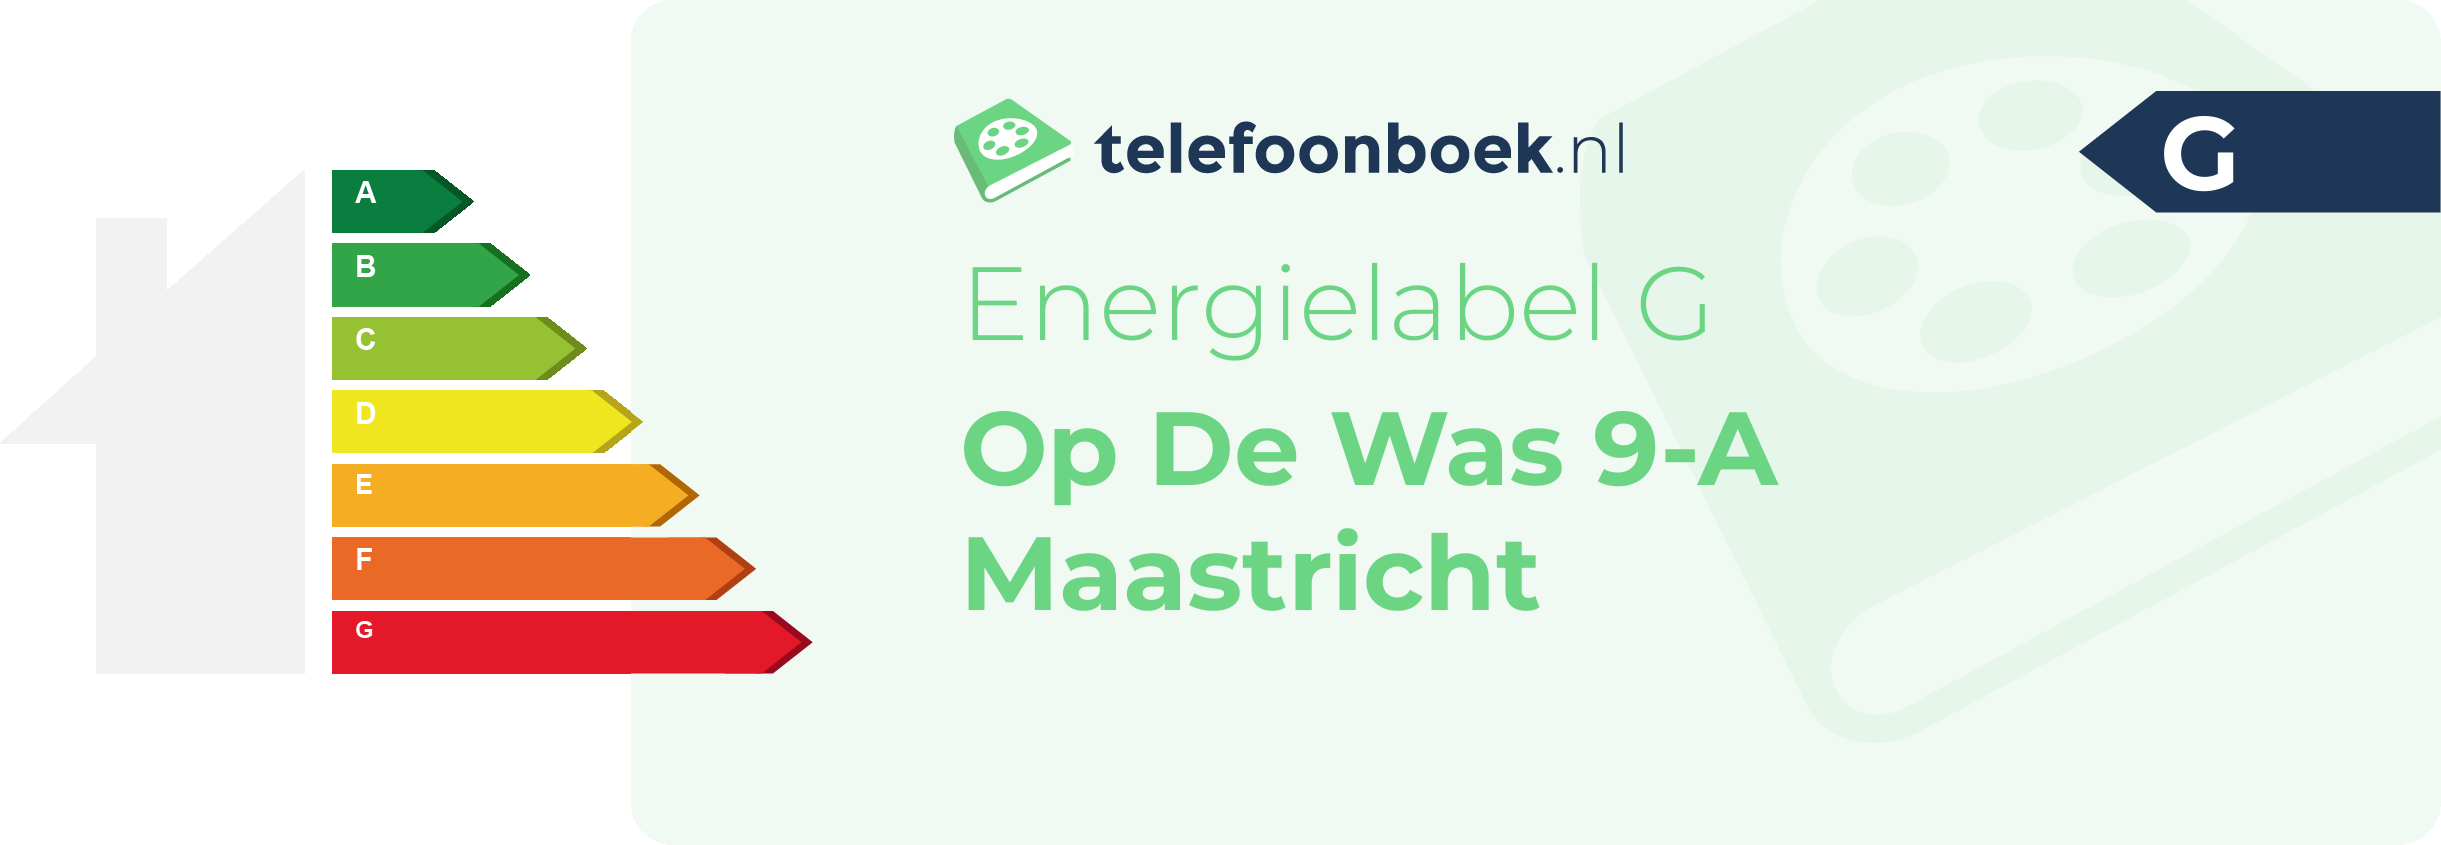 Energielabel Op De Was 9-A Maastricht